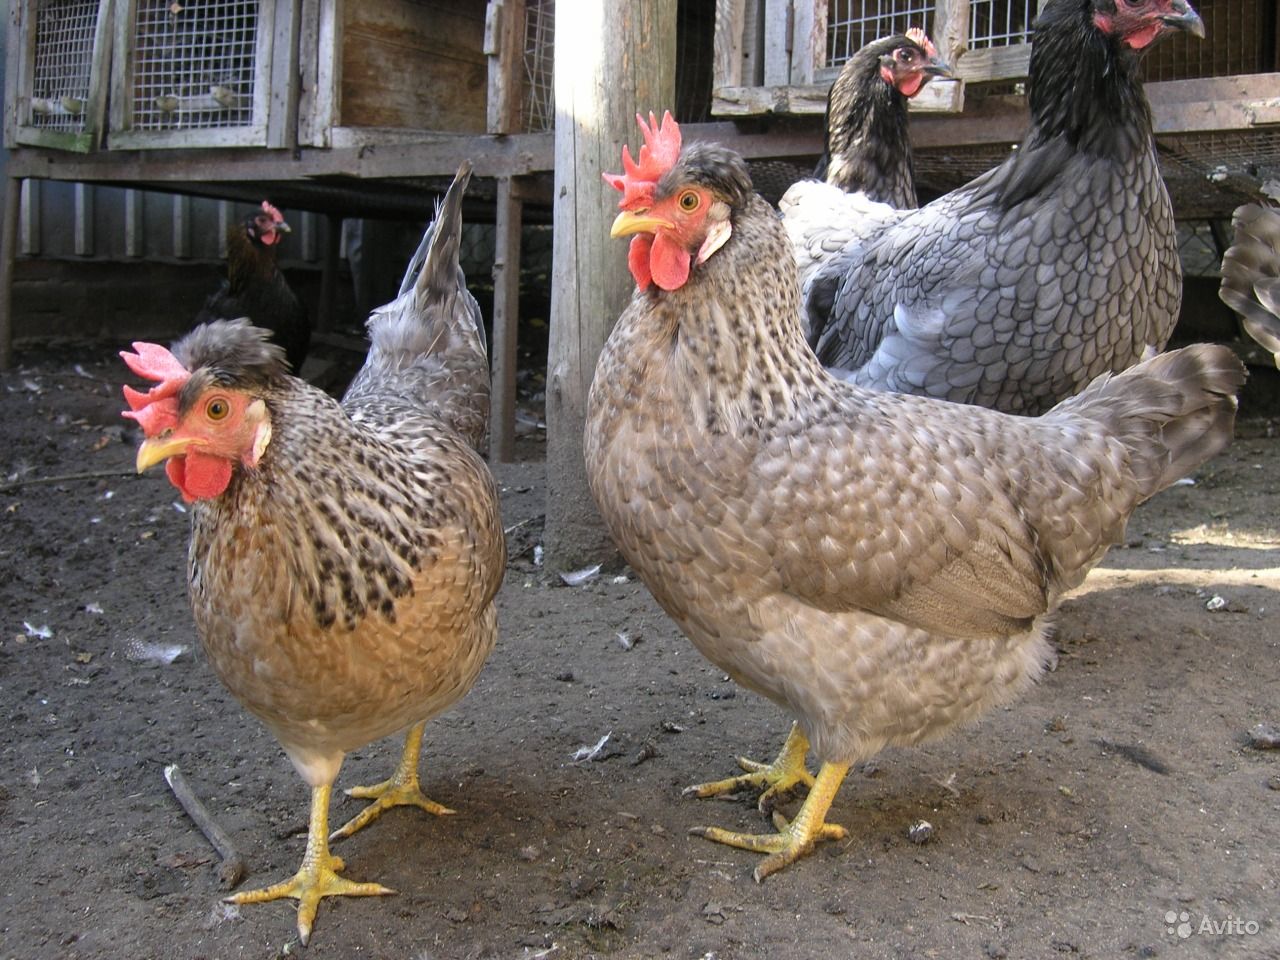 Виандот - мясо-яичная порода кур. Характеристики, описание, нюансы разведения, кормление